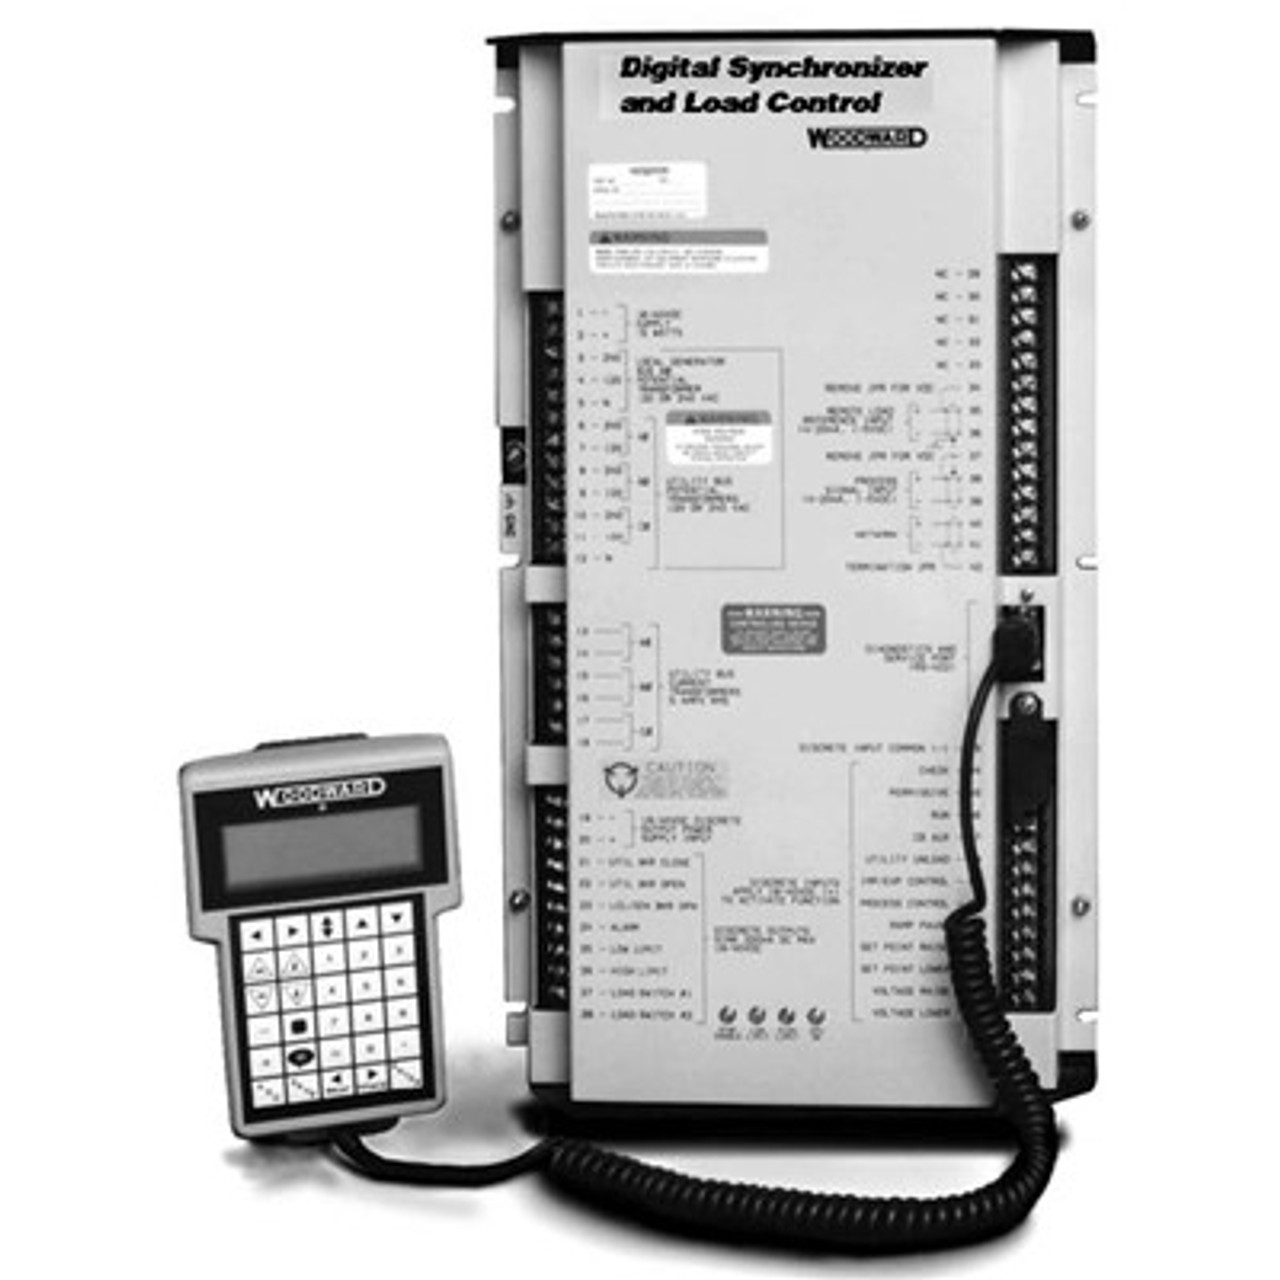 9905-797 - Digital Synchronizer and Load Control